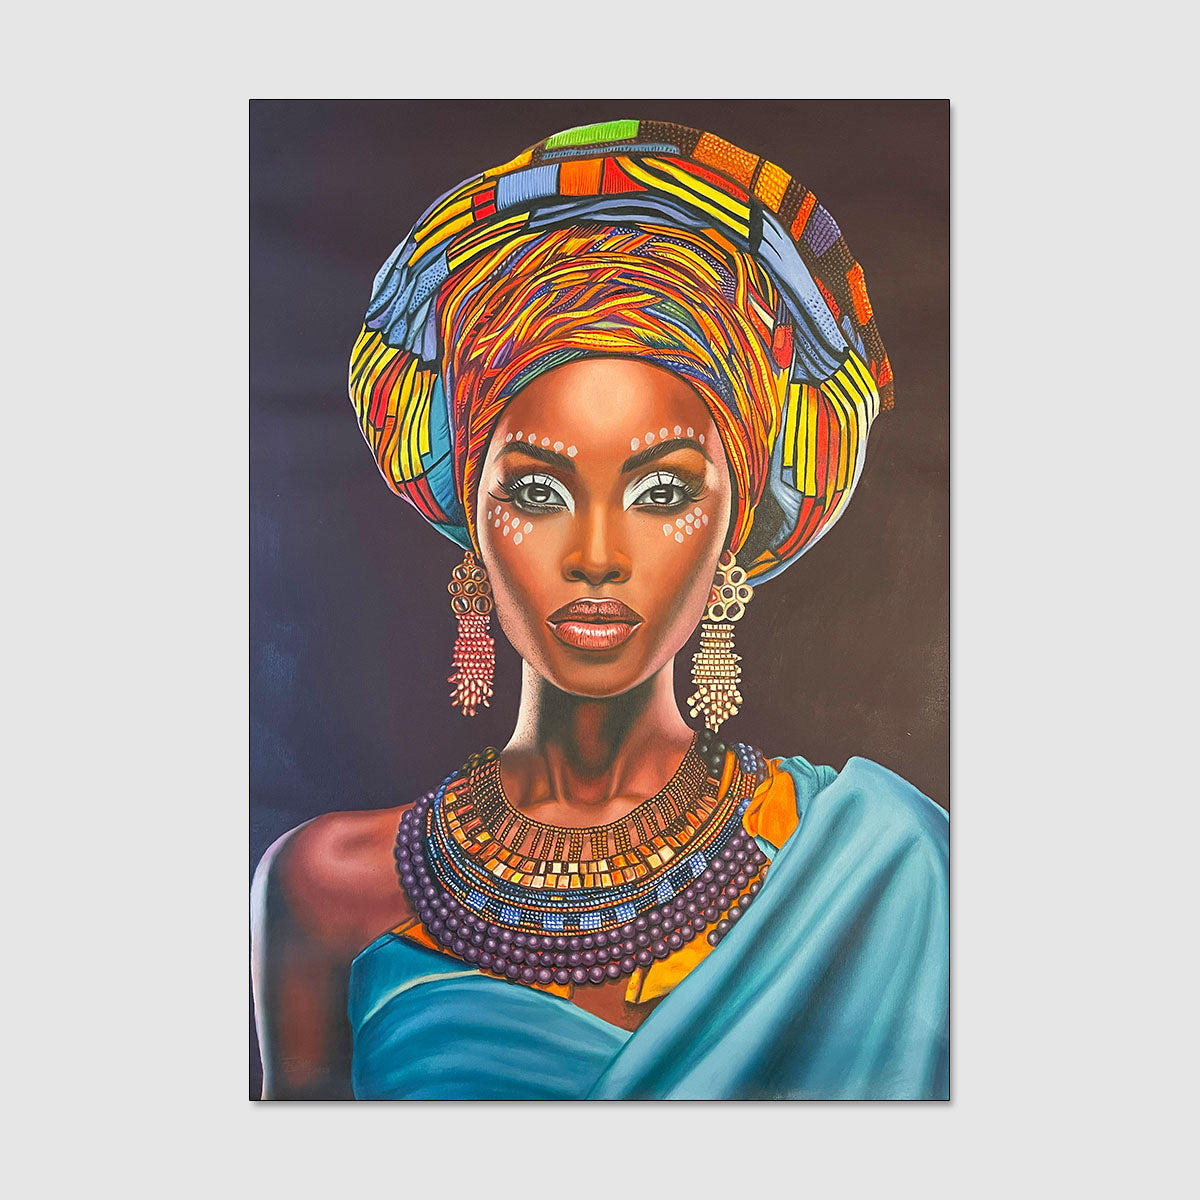 La Belleza de mi Ser, de la serie Rostros de Africa